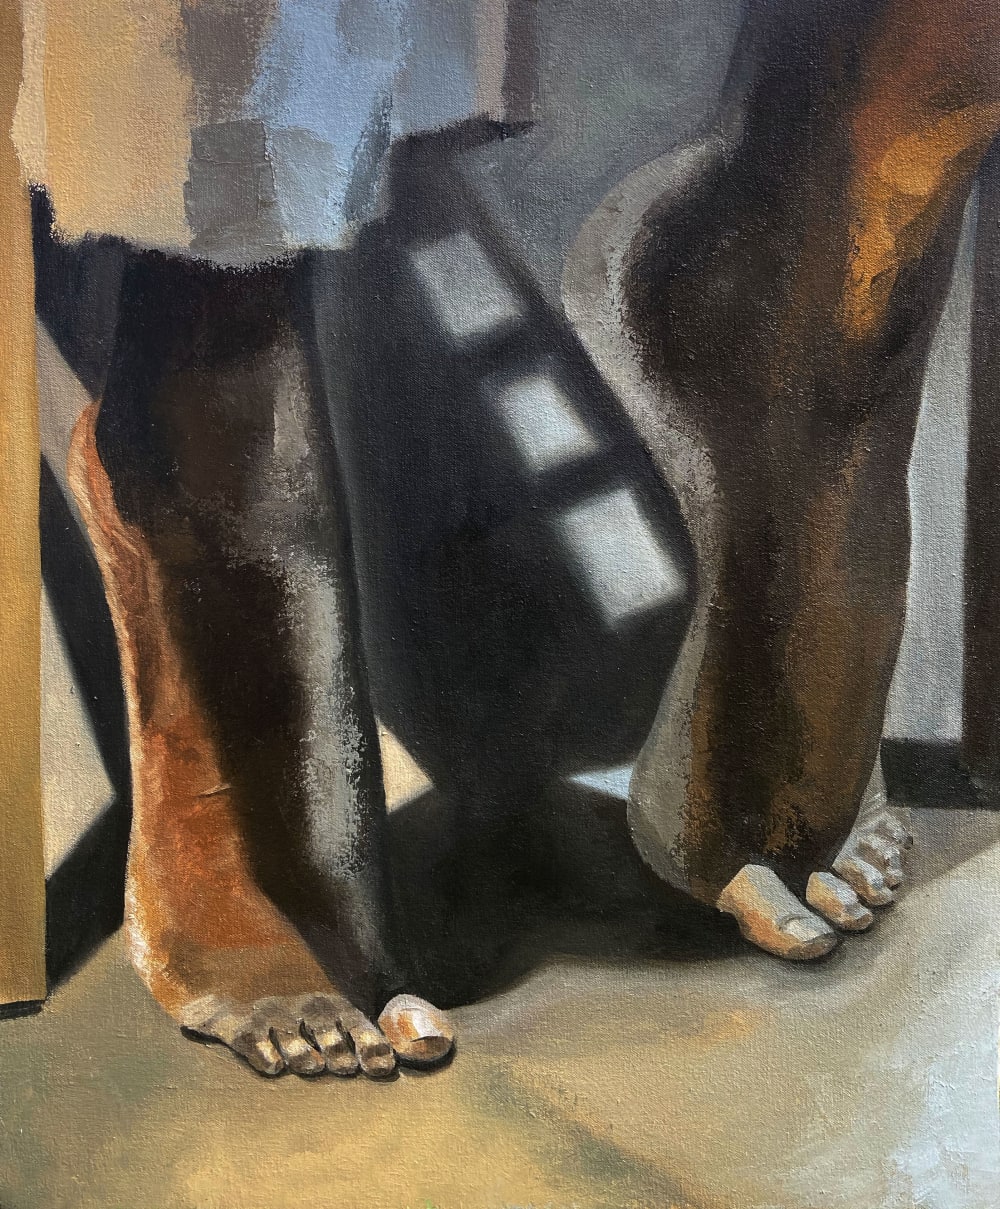 Self-Portrait (Feet) by Princess Justice Janêe Henderson